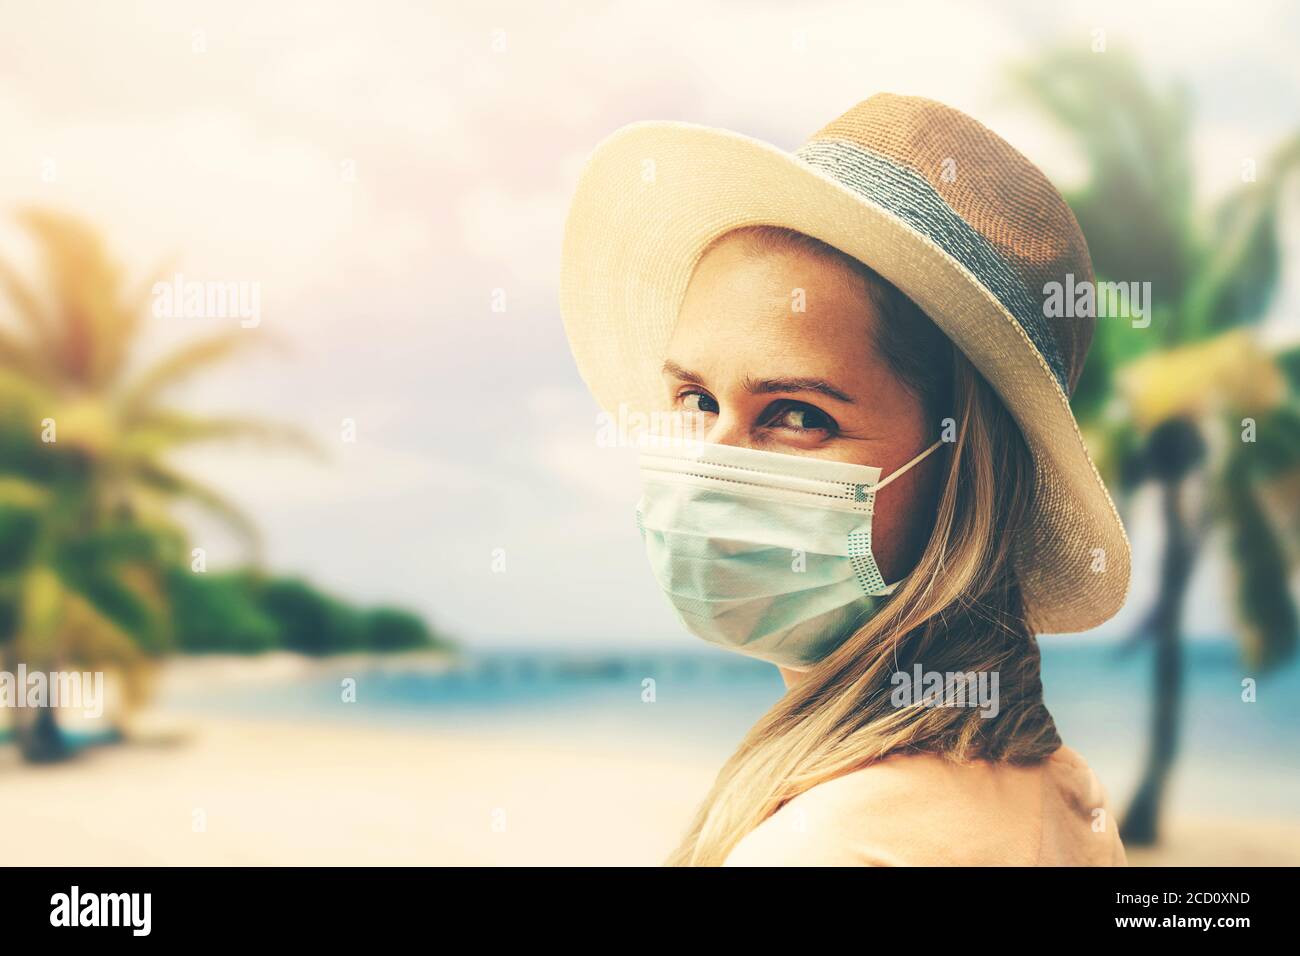 giovane donna con maschera protettiva sulla spiaggia tropicale. covid-19 o pandemia coronavirus. viaggio estivo con nuova normalità Foto Stock